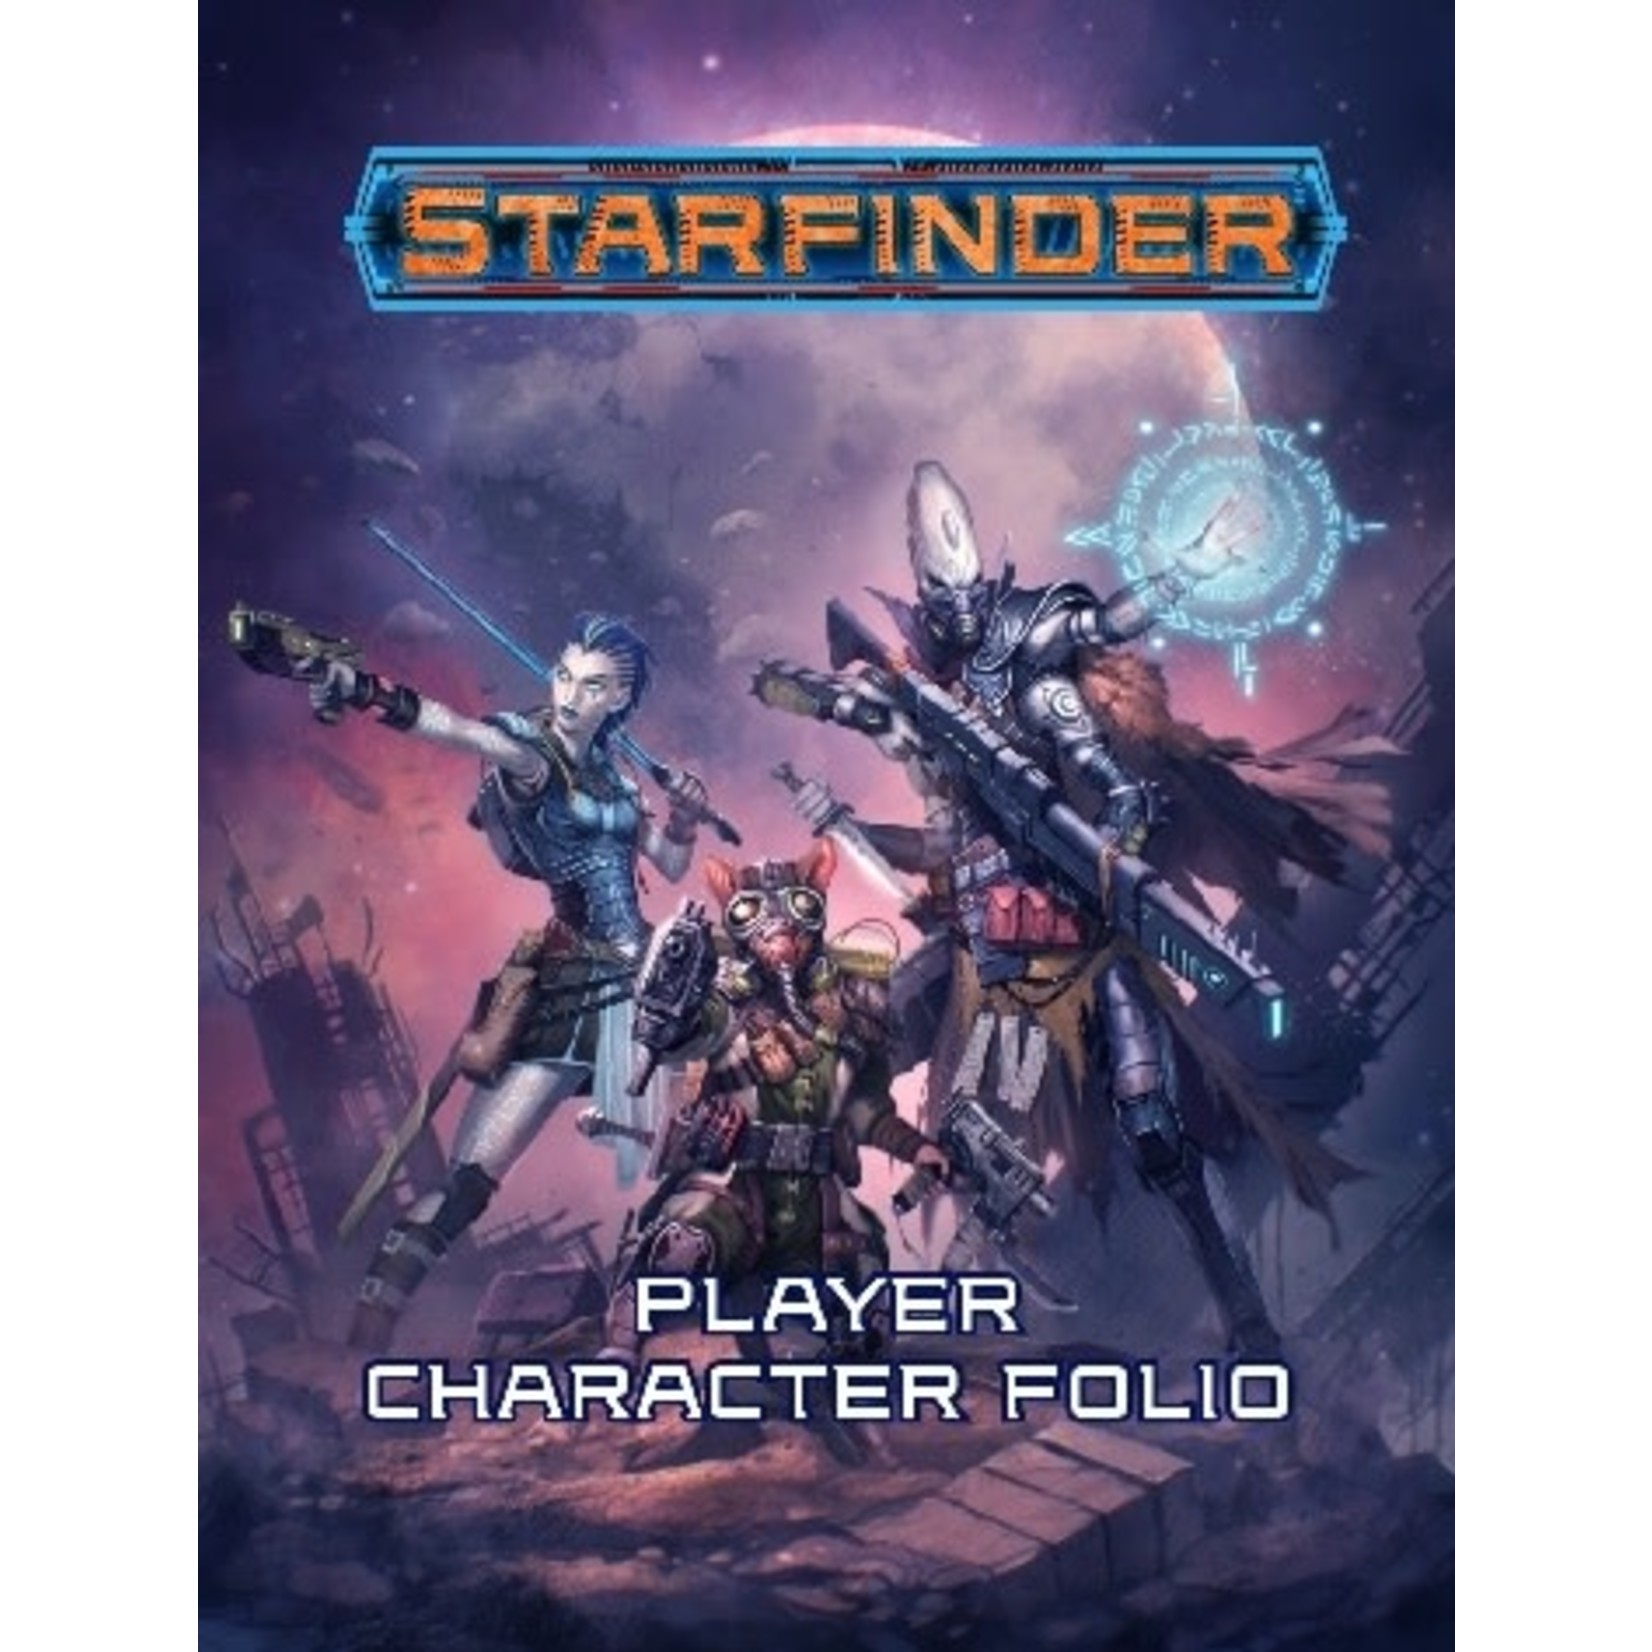 Starfinder STARFINDER PLAYER CHARACTER FOLIO